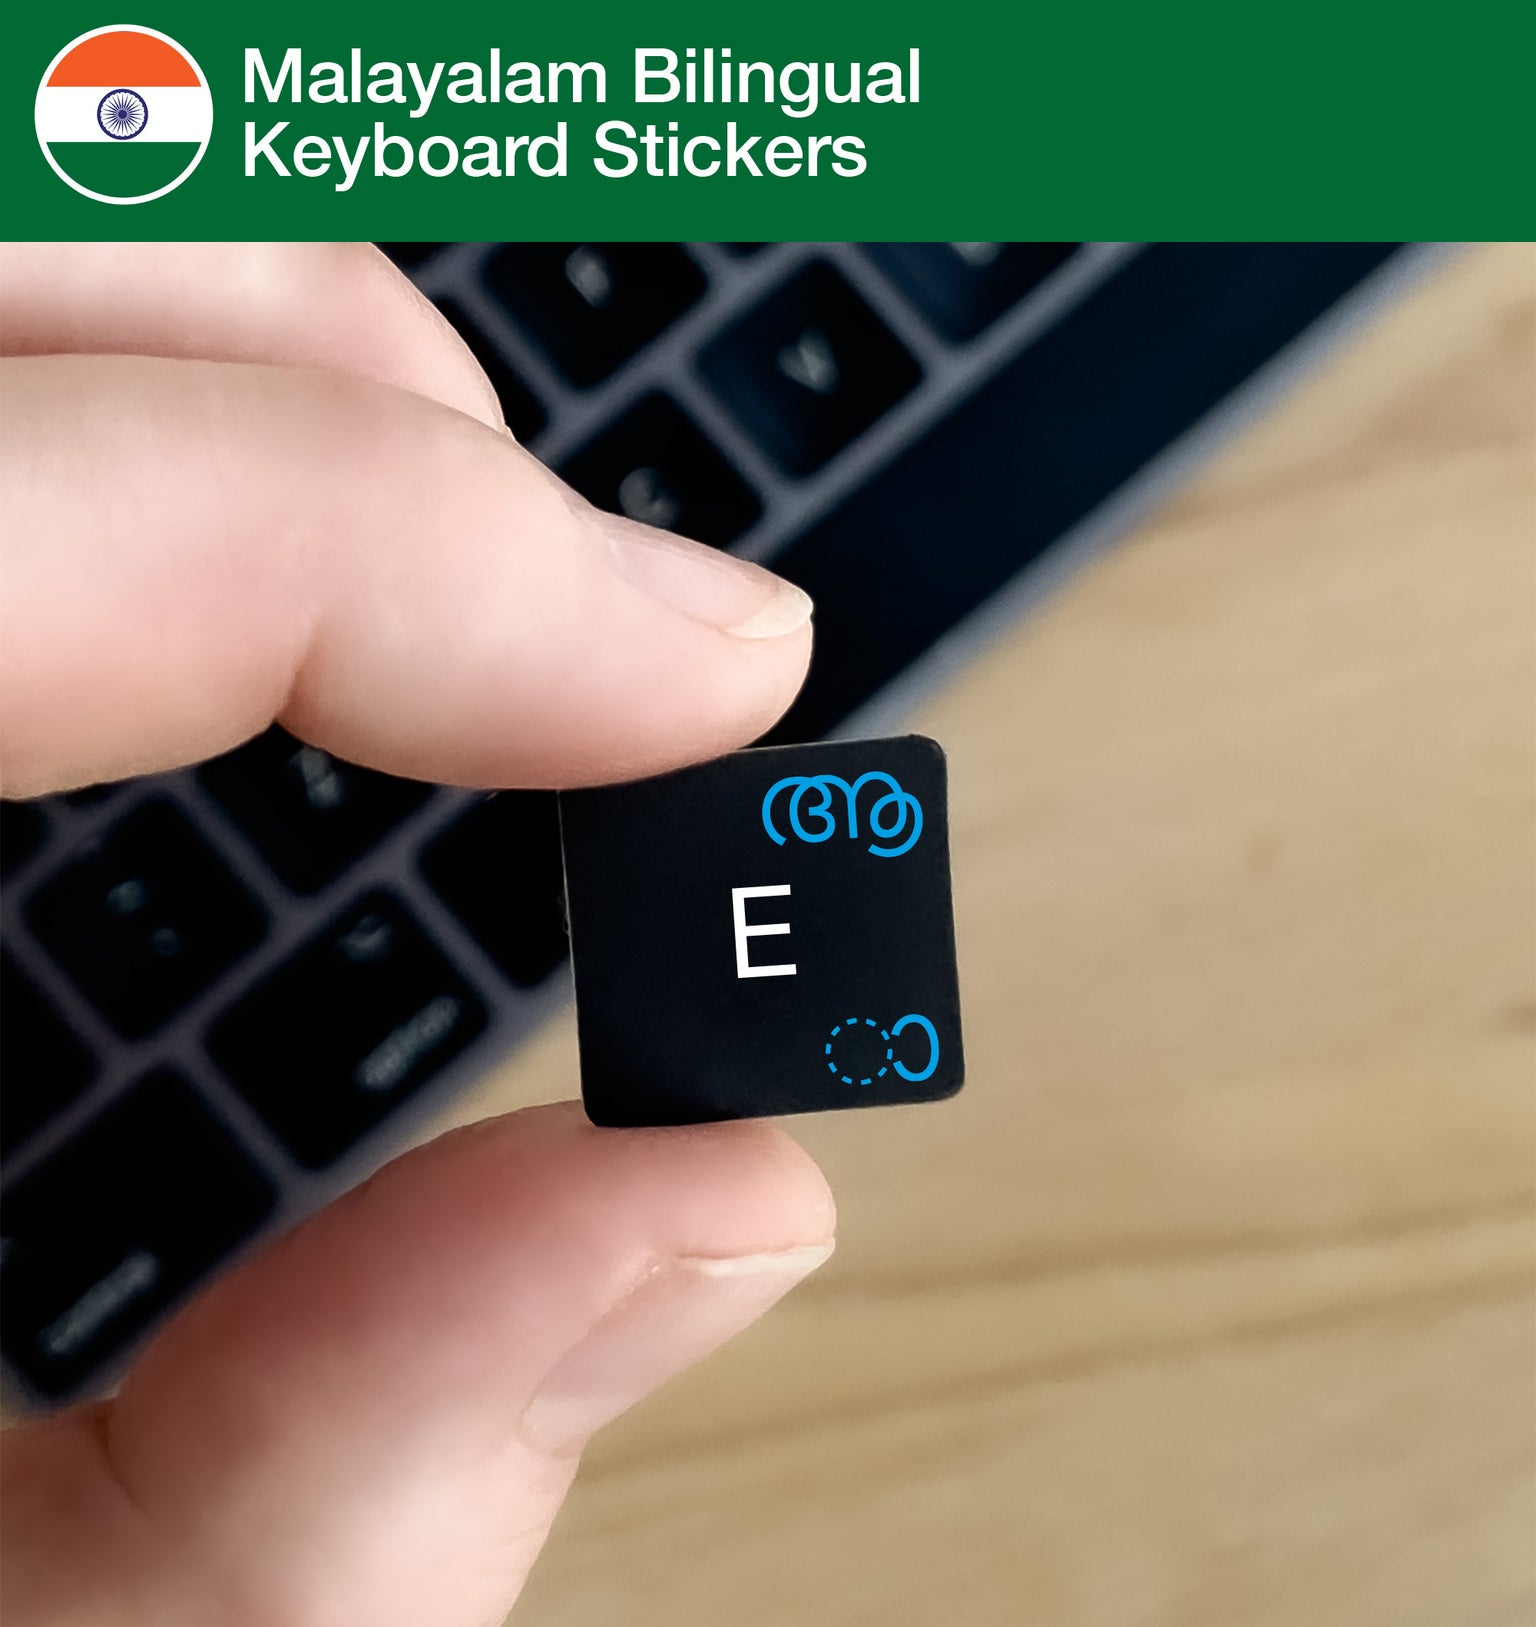 Malayalam Bilingual Keyboard Stickers with Malayalam layout